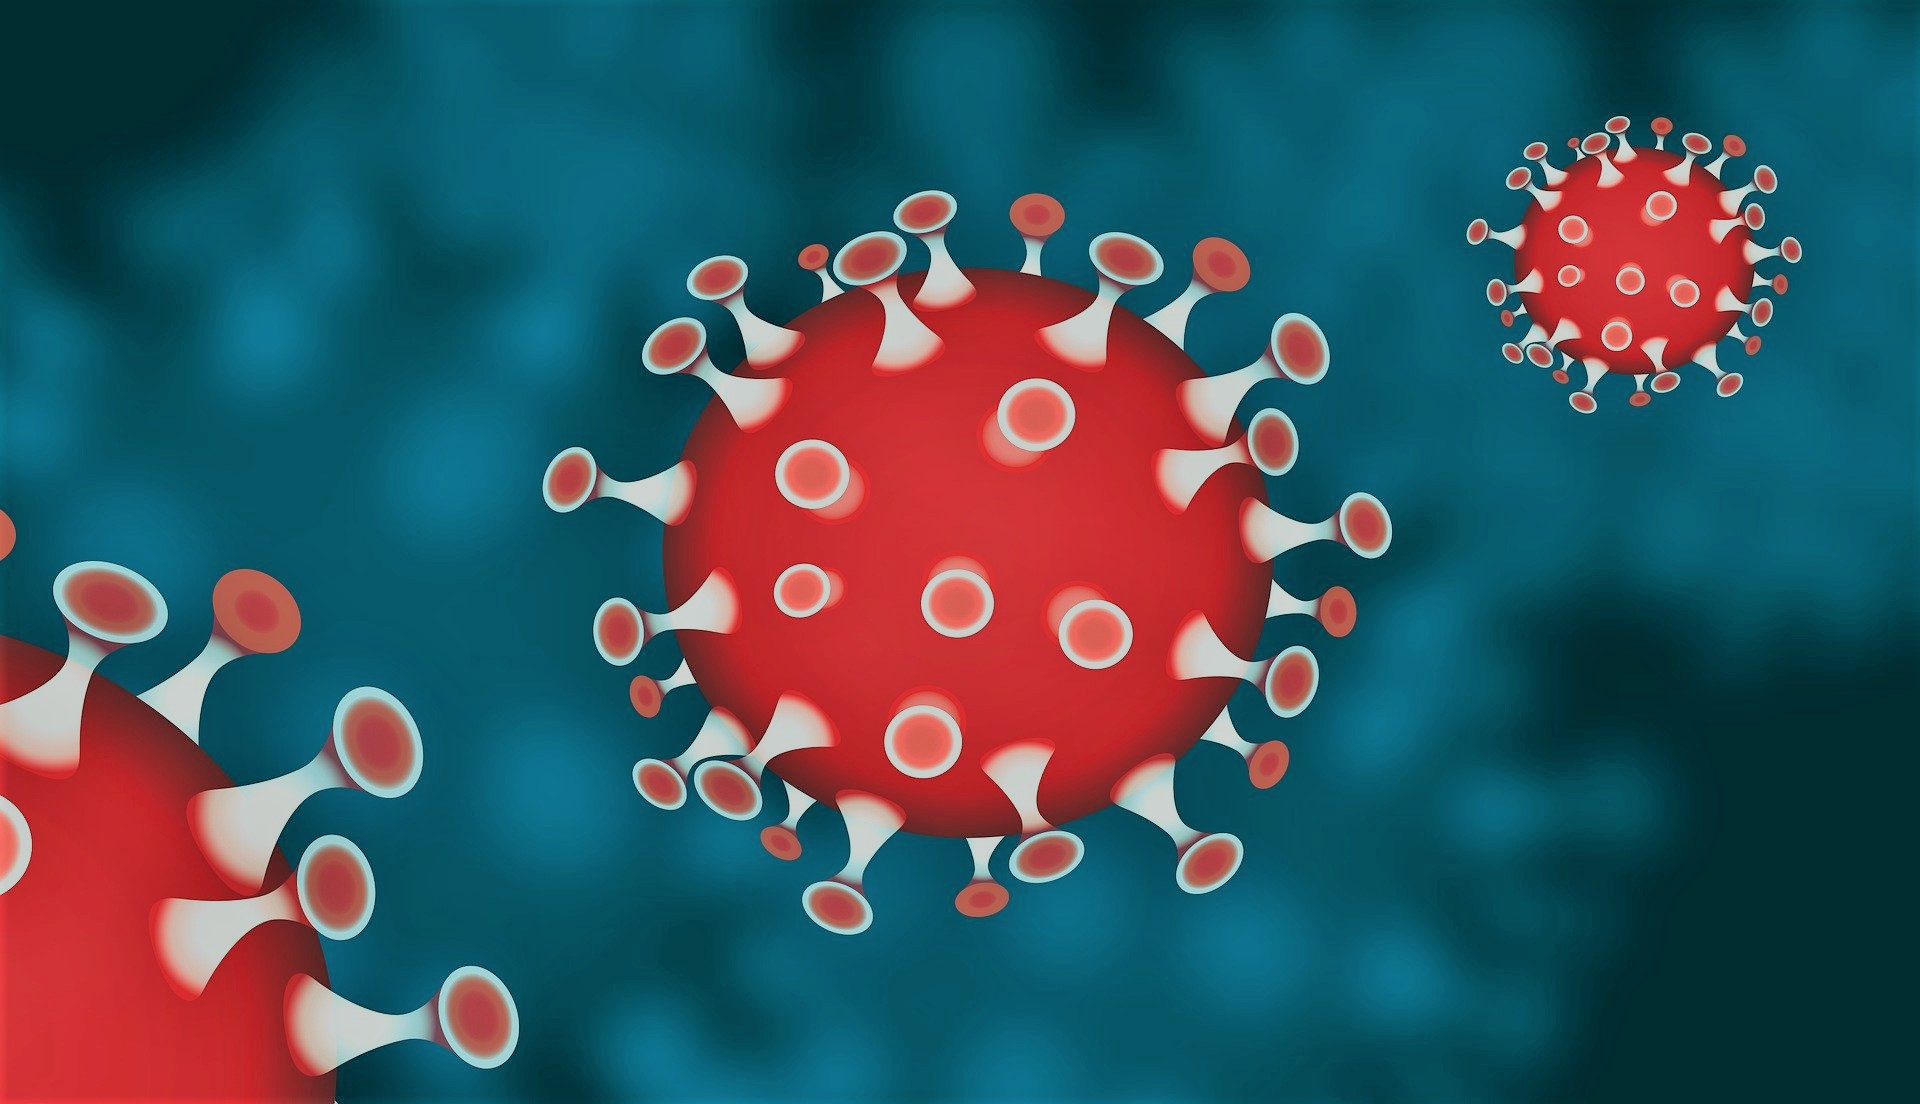 Corona-Virus als Illustration